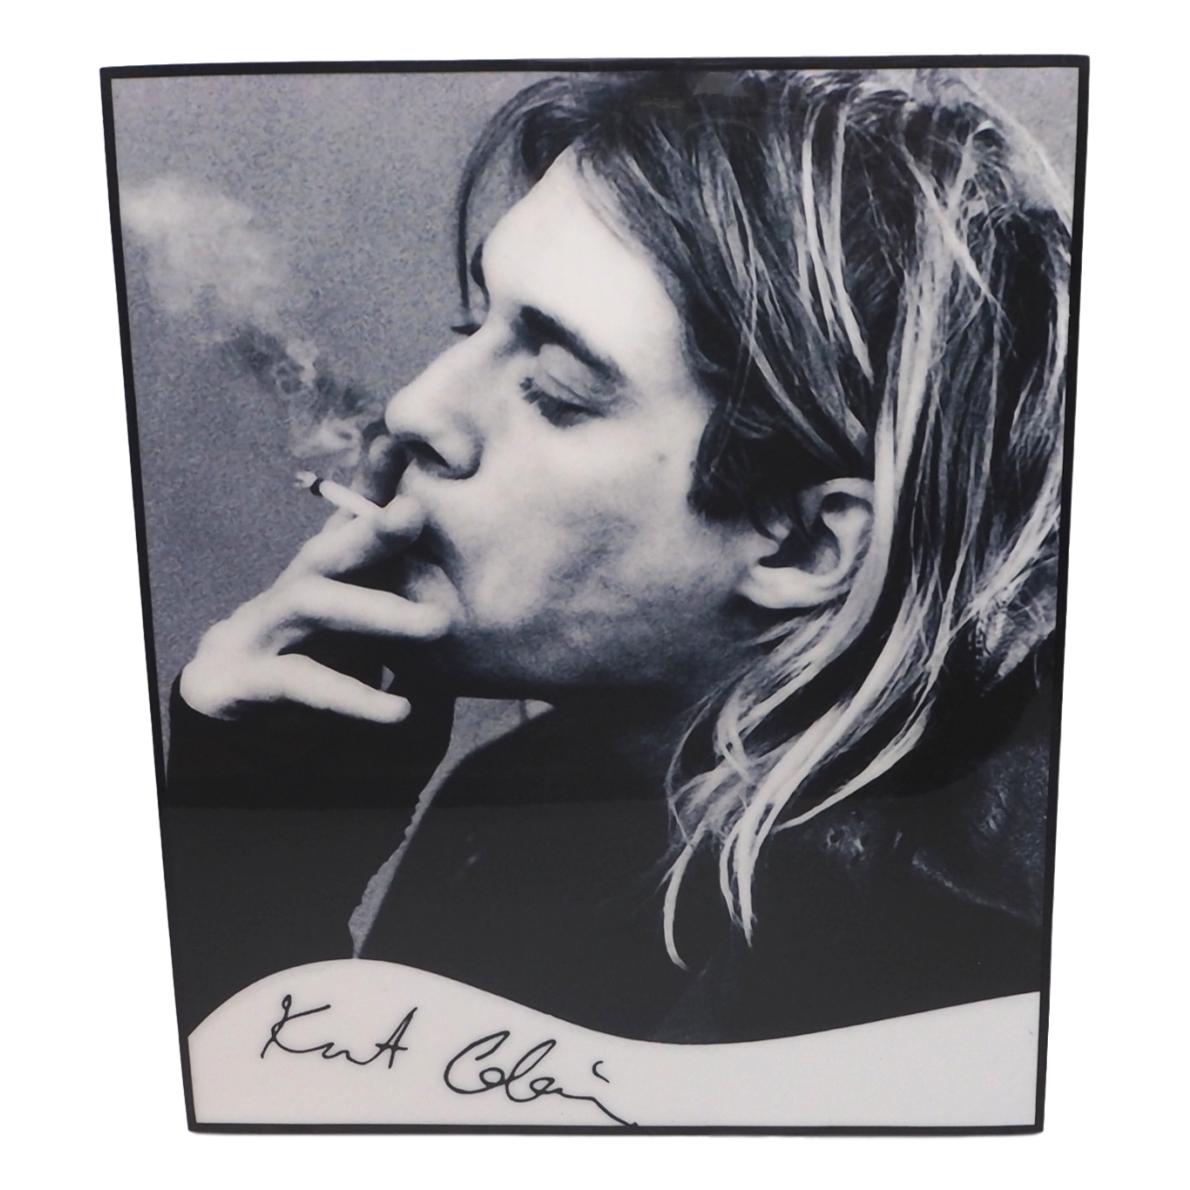 ポップ ビンテージ クール なデザインあります 送料無料 カート コバーン Kurt Cobain ニルヴァーナ Nirvana アートパネル 壁掛け 据え置き 壁掛けフック付き アーティスト Popパネル インテリア アートフレーム ポスター Cool かっこいい アート 雑貨 カフェ リビング 額